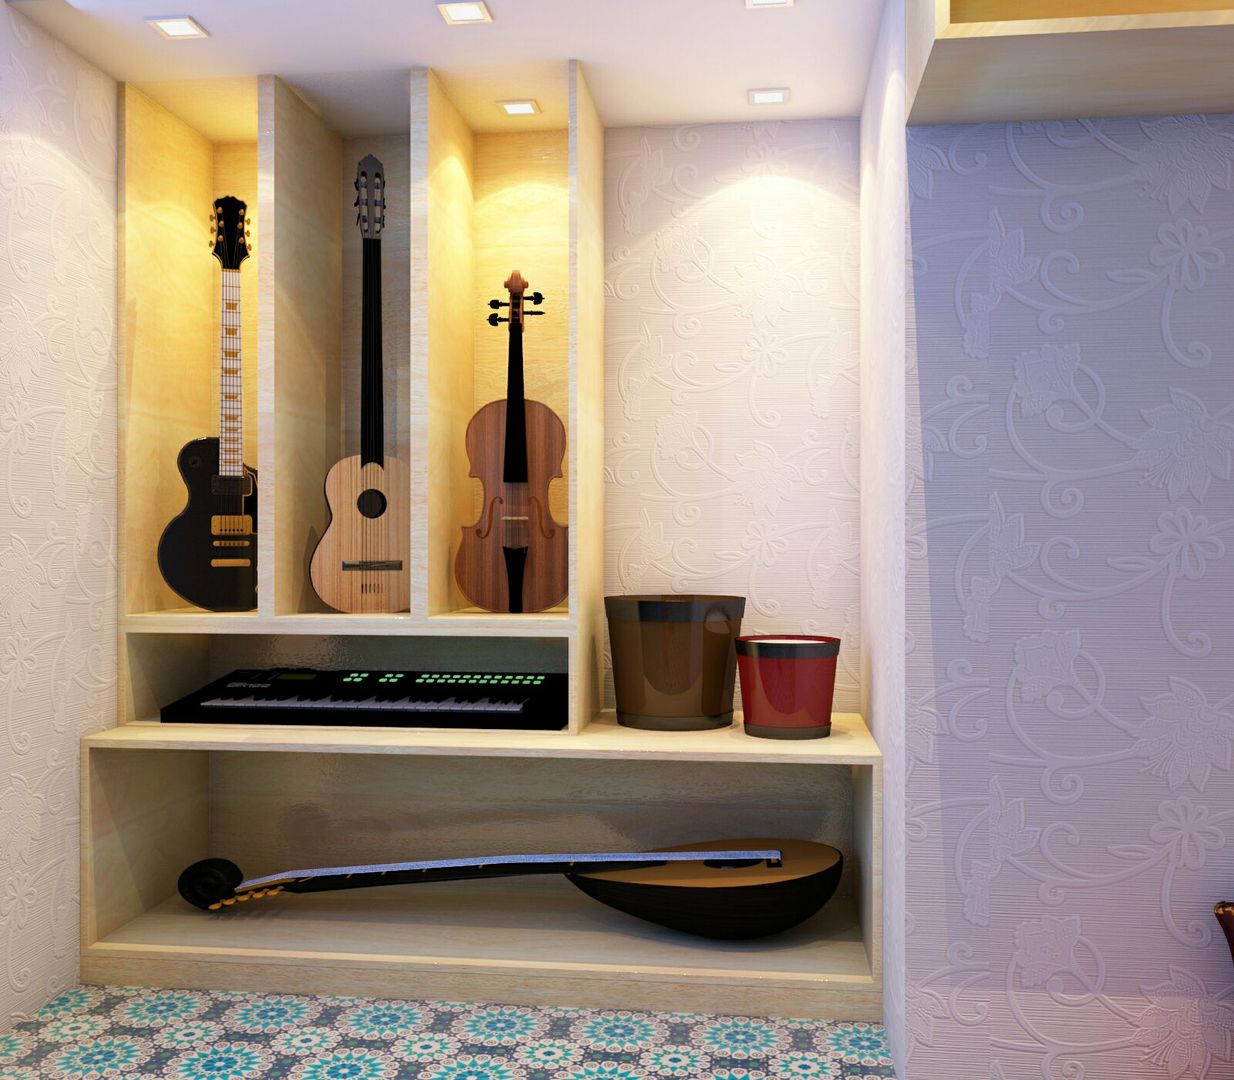 Music area in study room Creazione Interiors